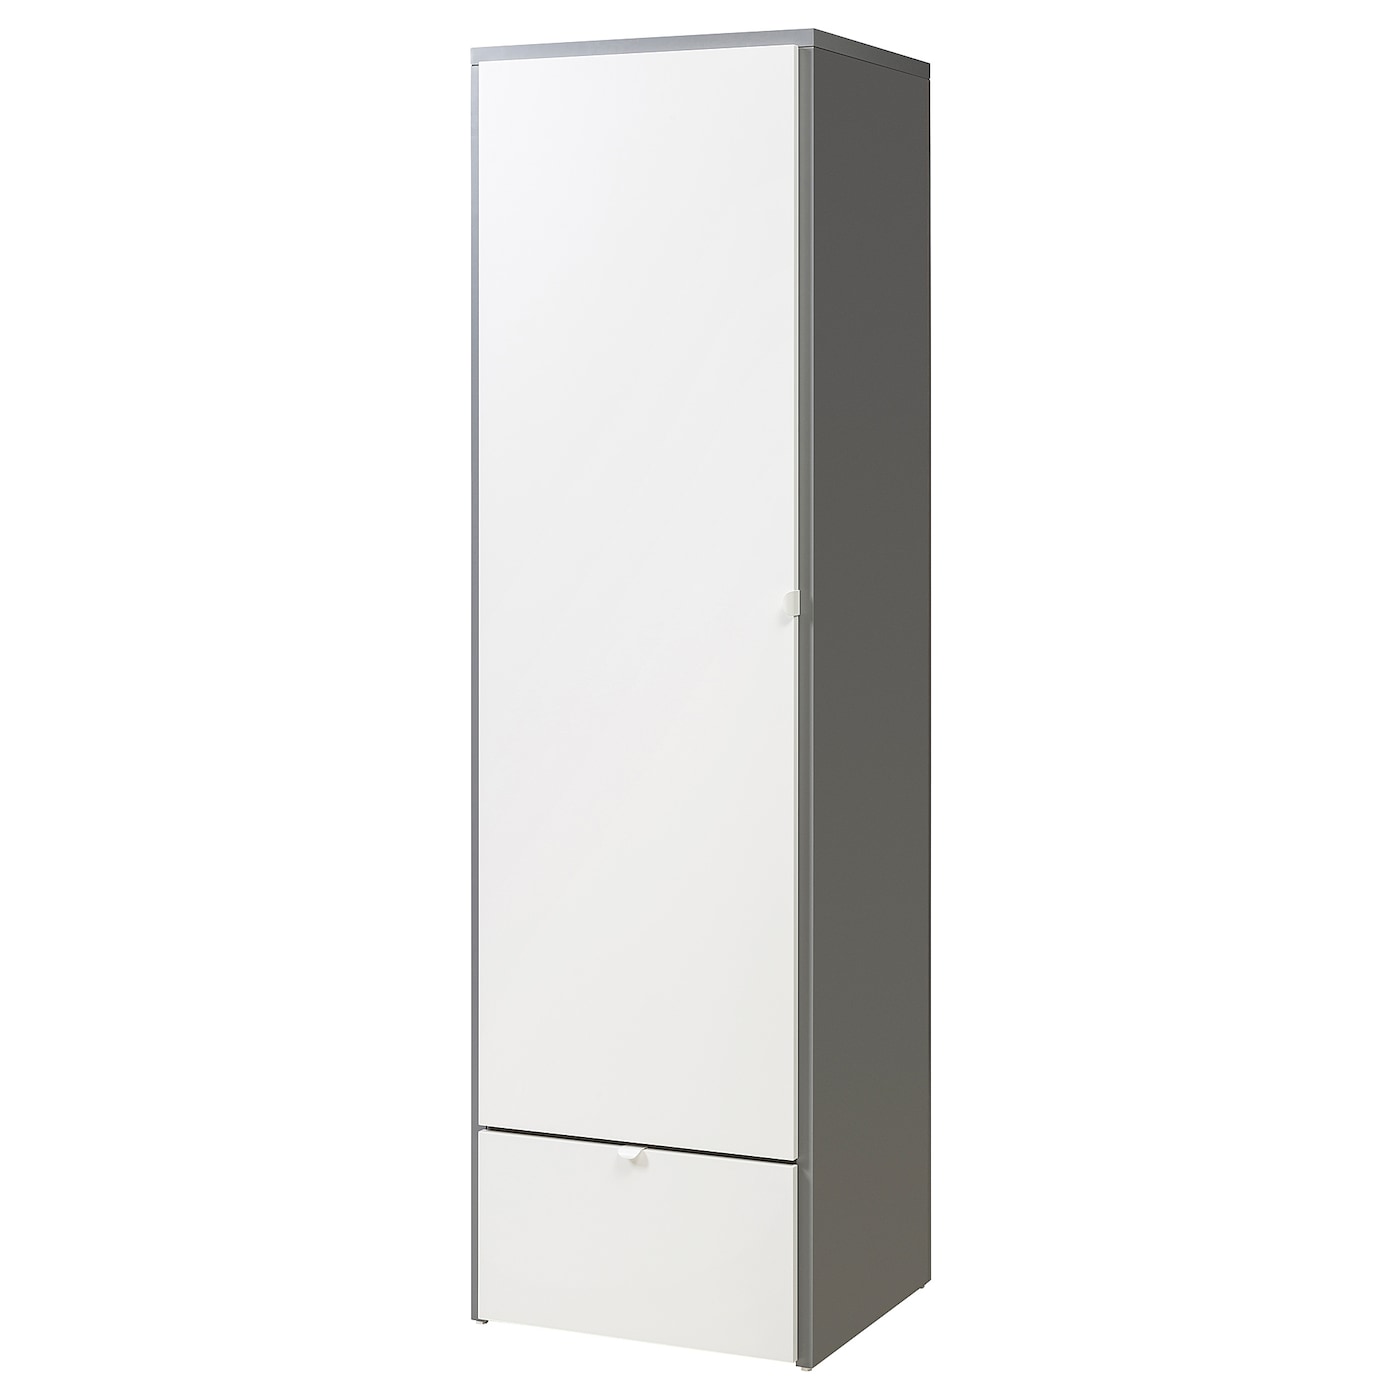 Платяной шкаф - VISTHUS IKEA/ ВИСТХУС ИКЕА, 63x59x216, белый/серый